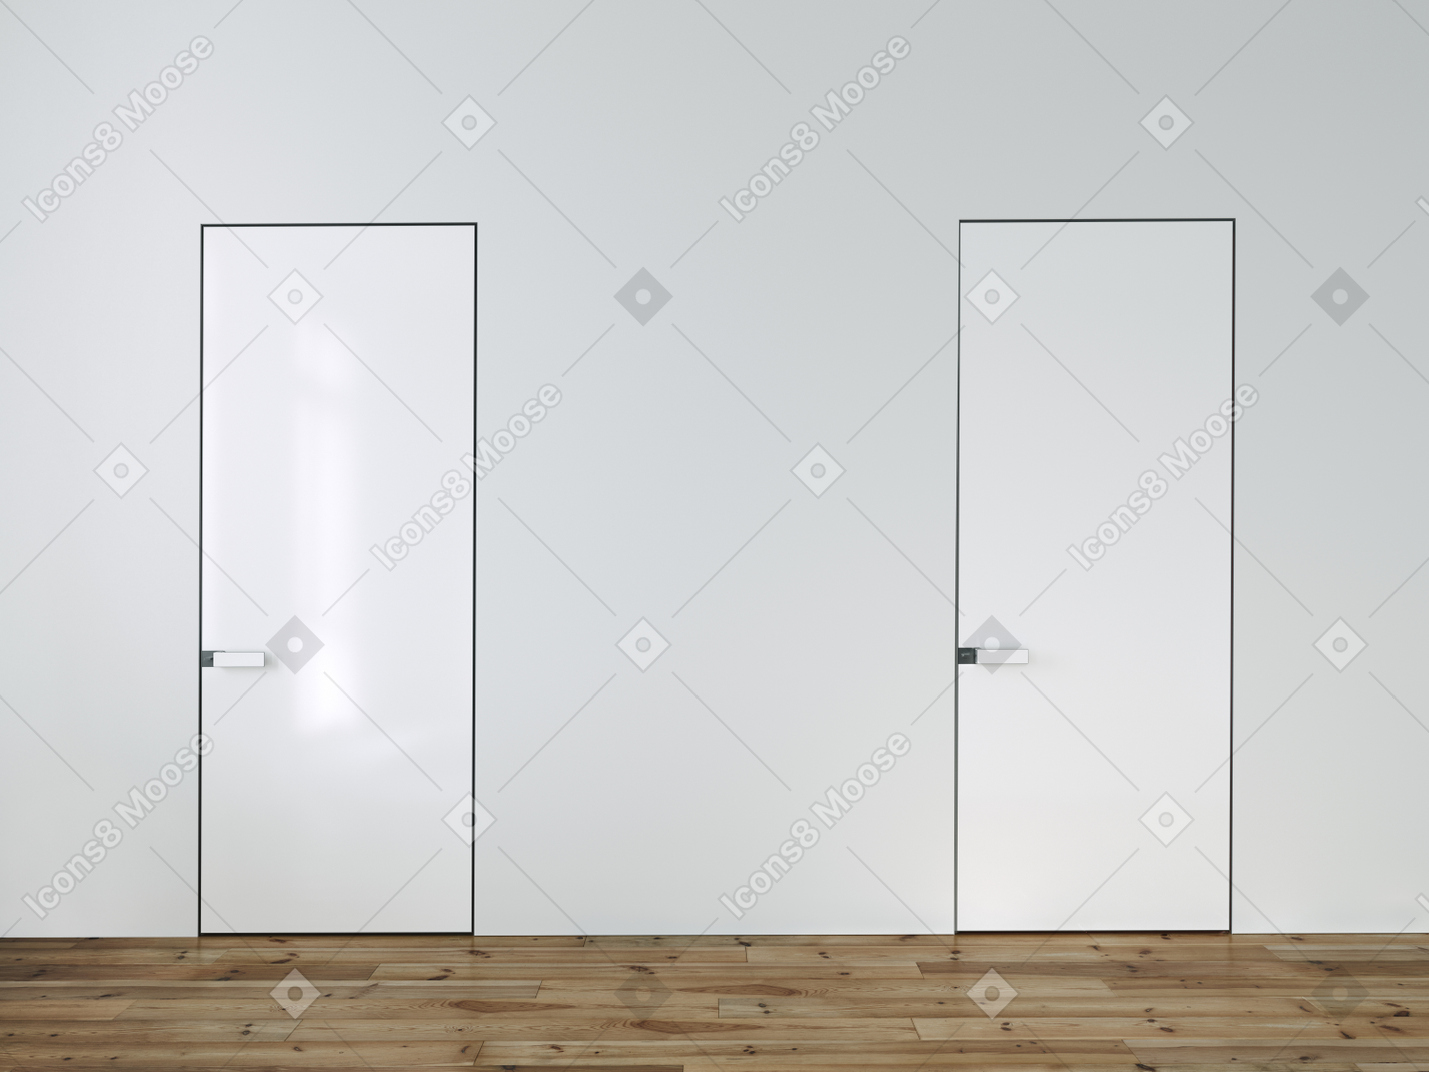 Dos puertas en una pared blanca